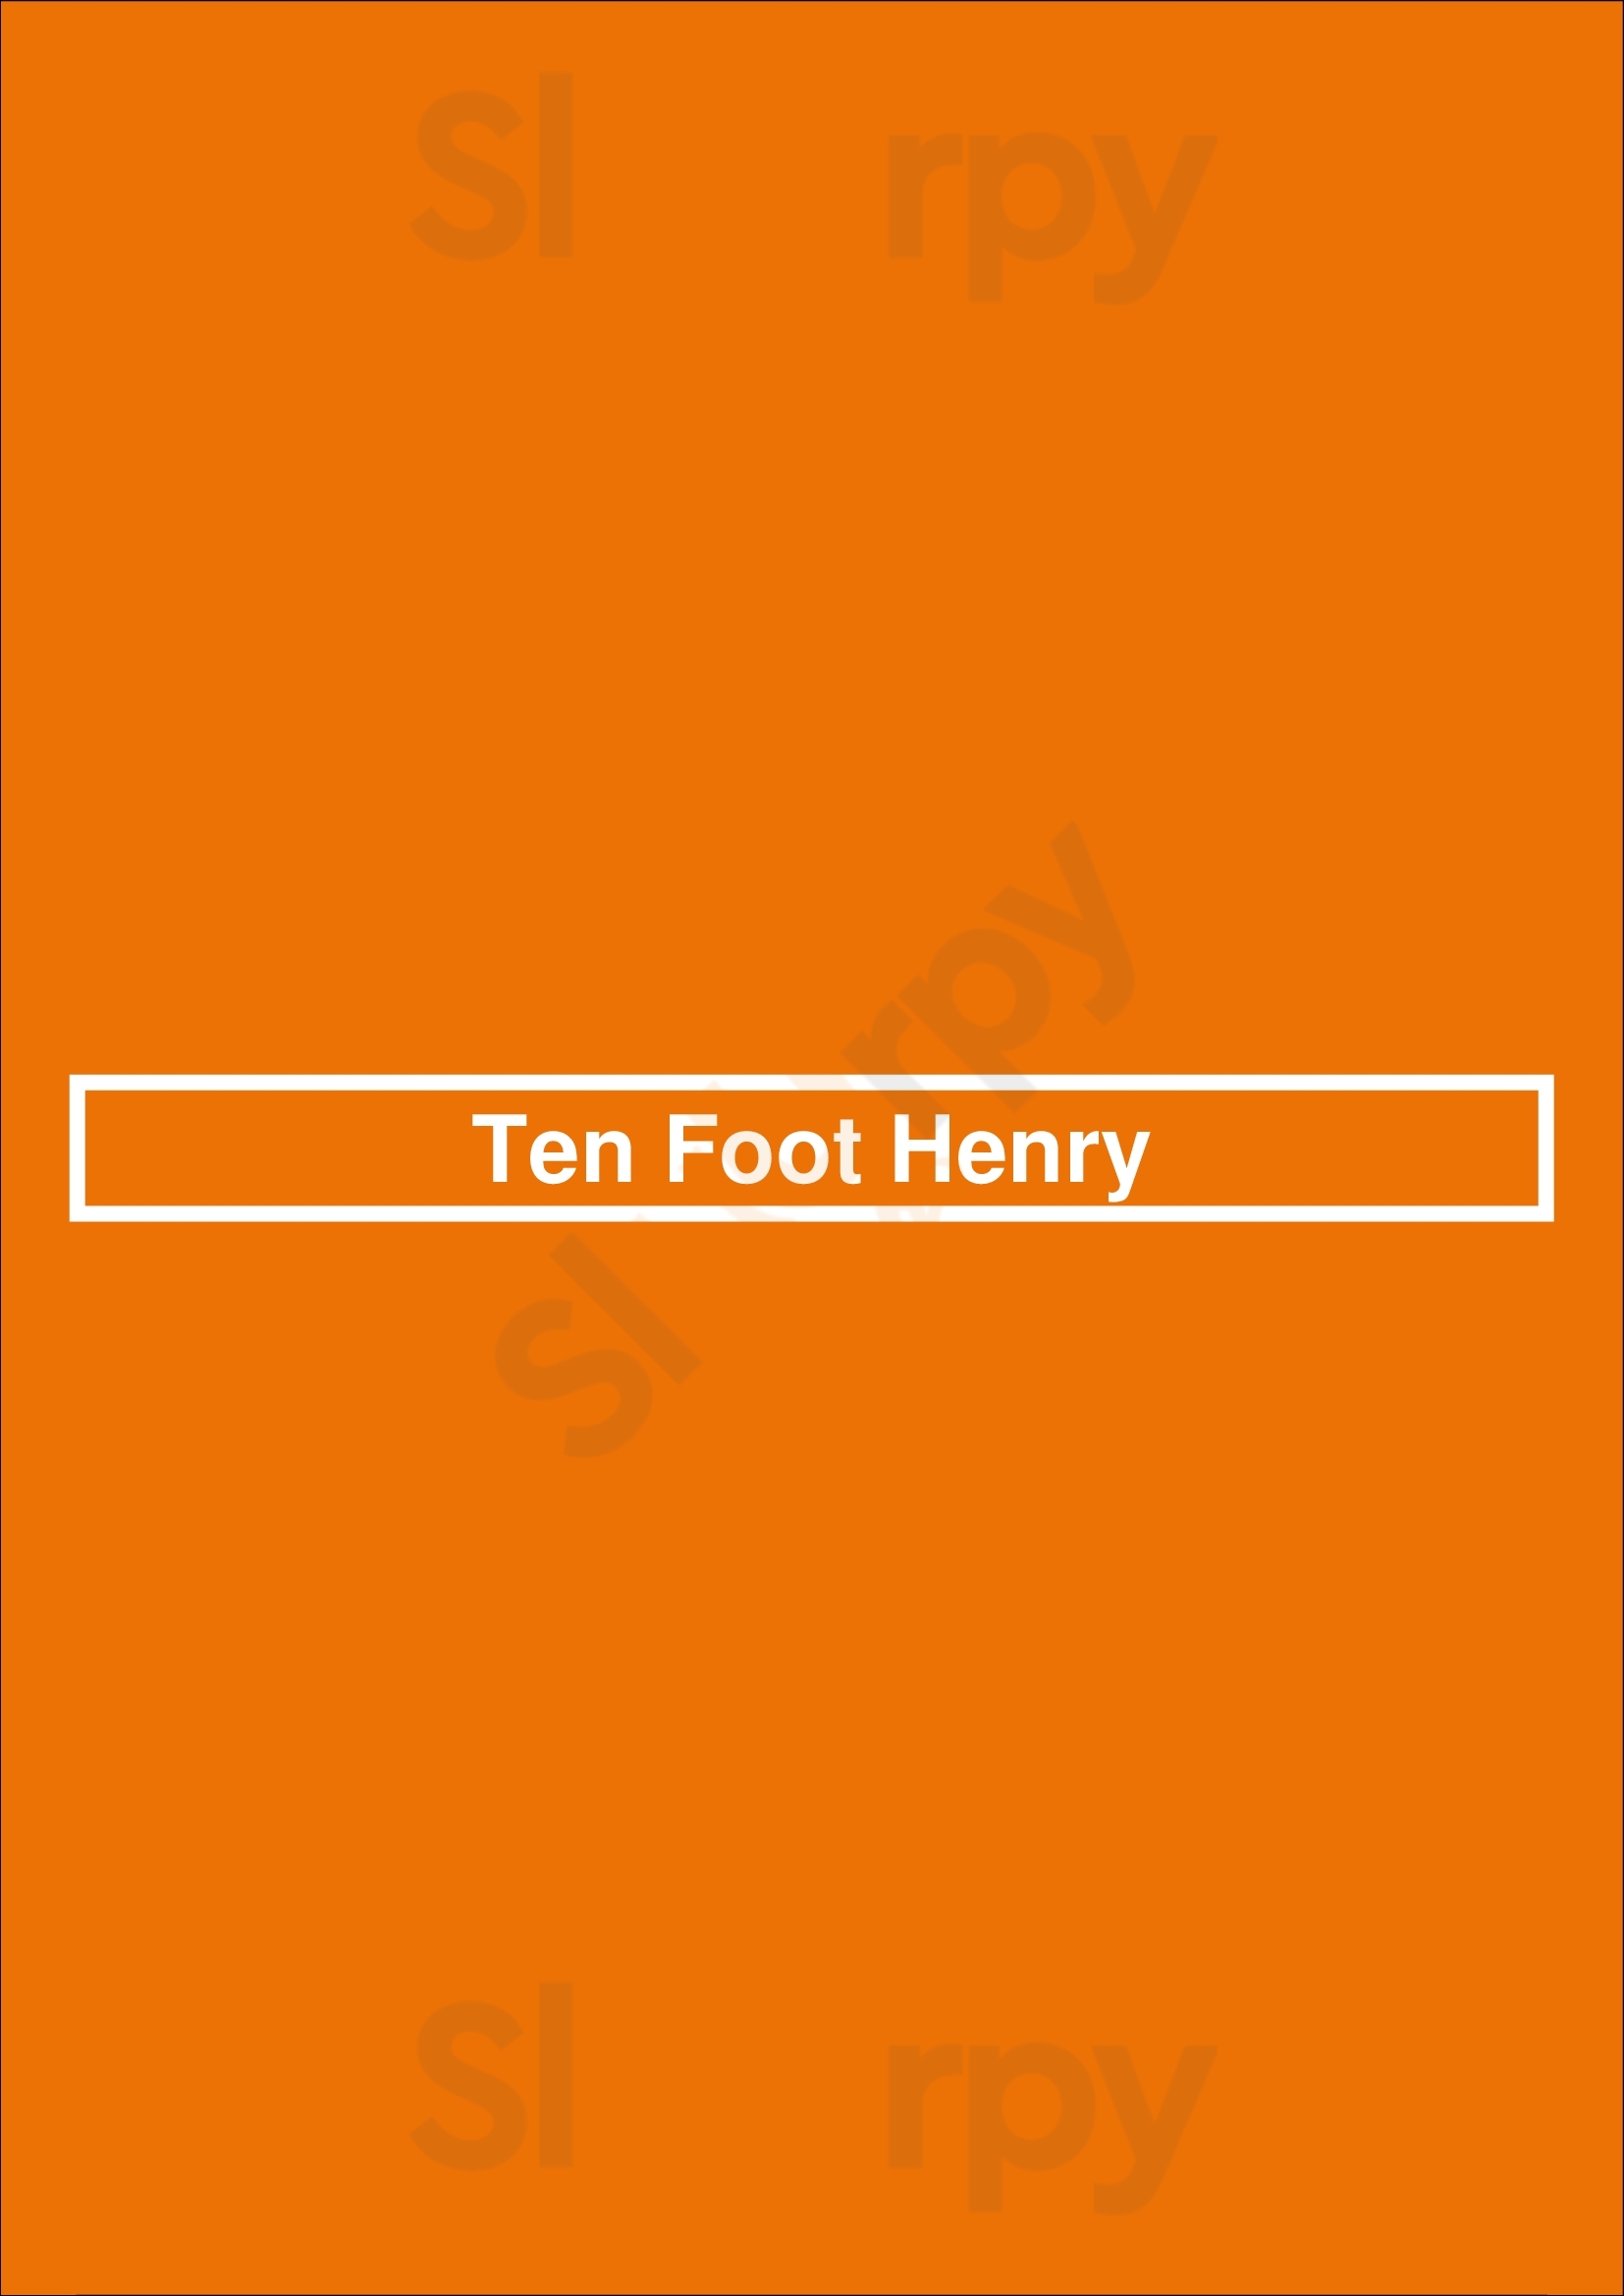 Ten Foot Henry Calgary Menu - 1